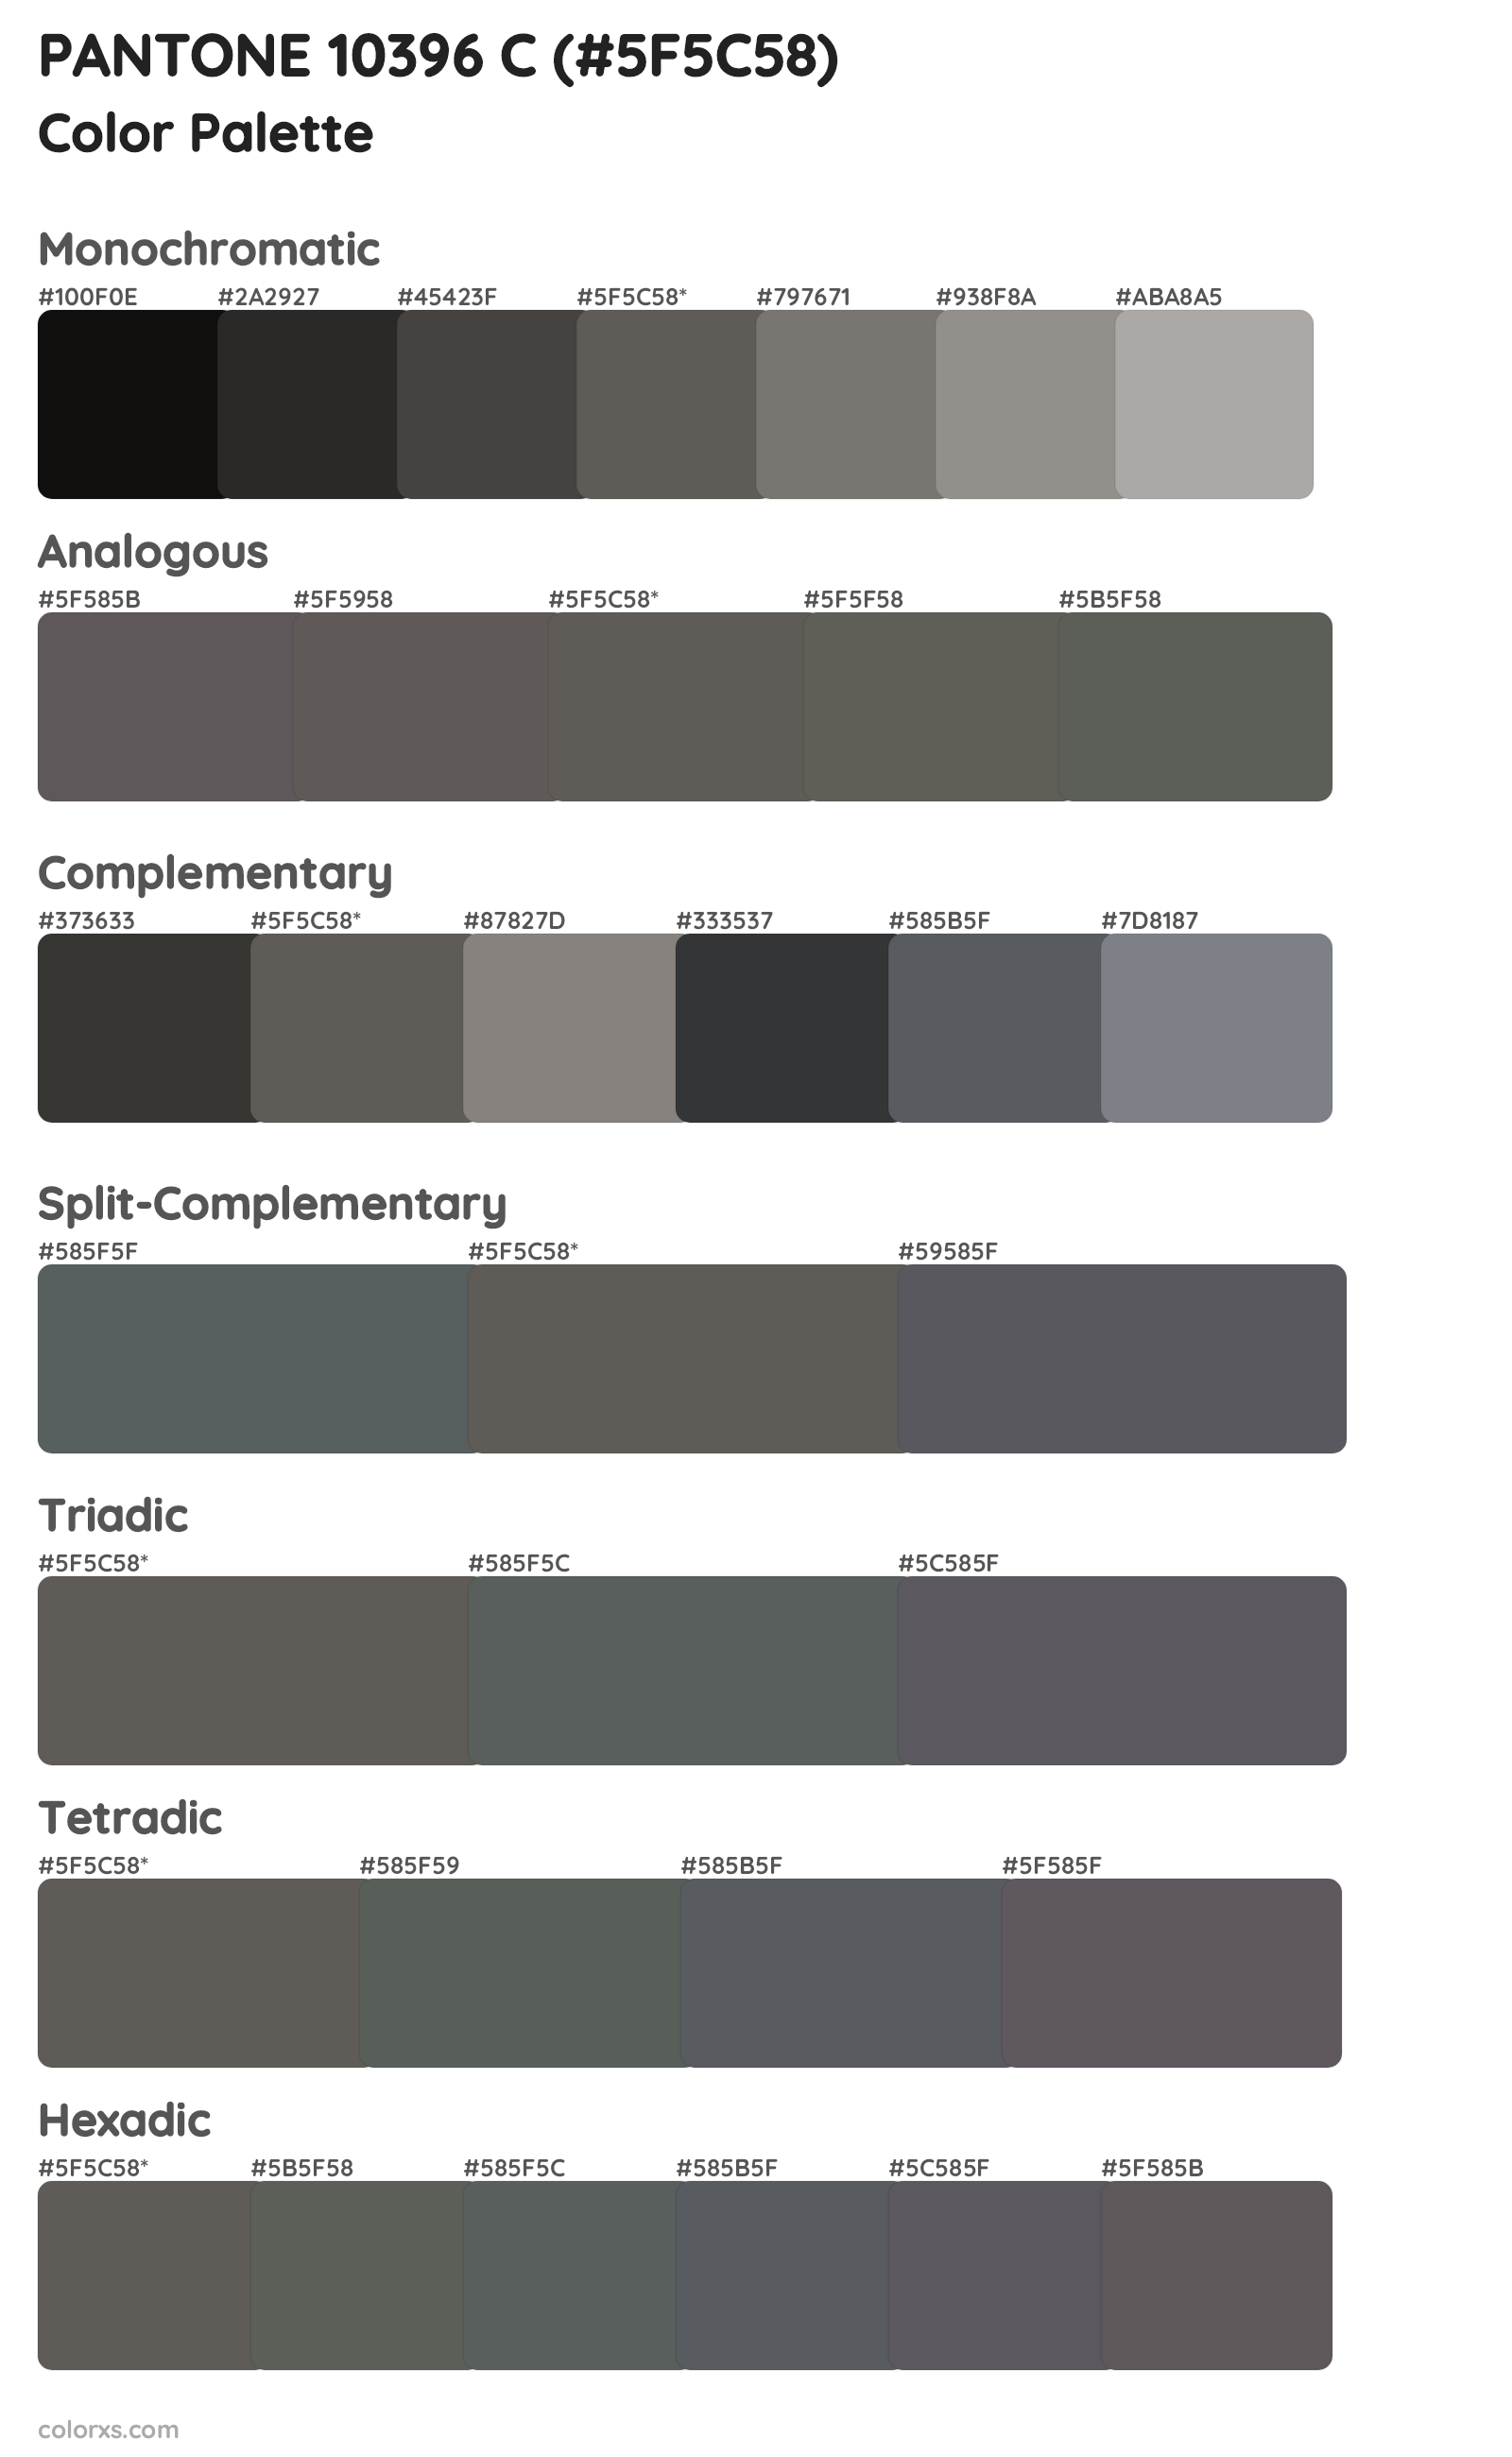 PANTONE 10396 C Color Scheme Palettes